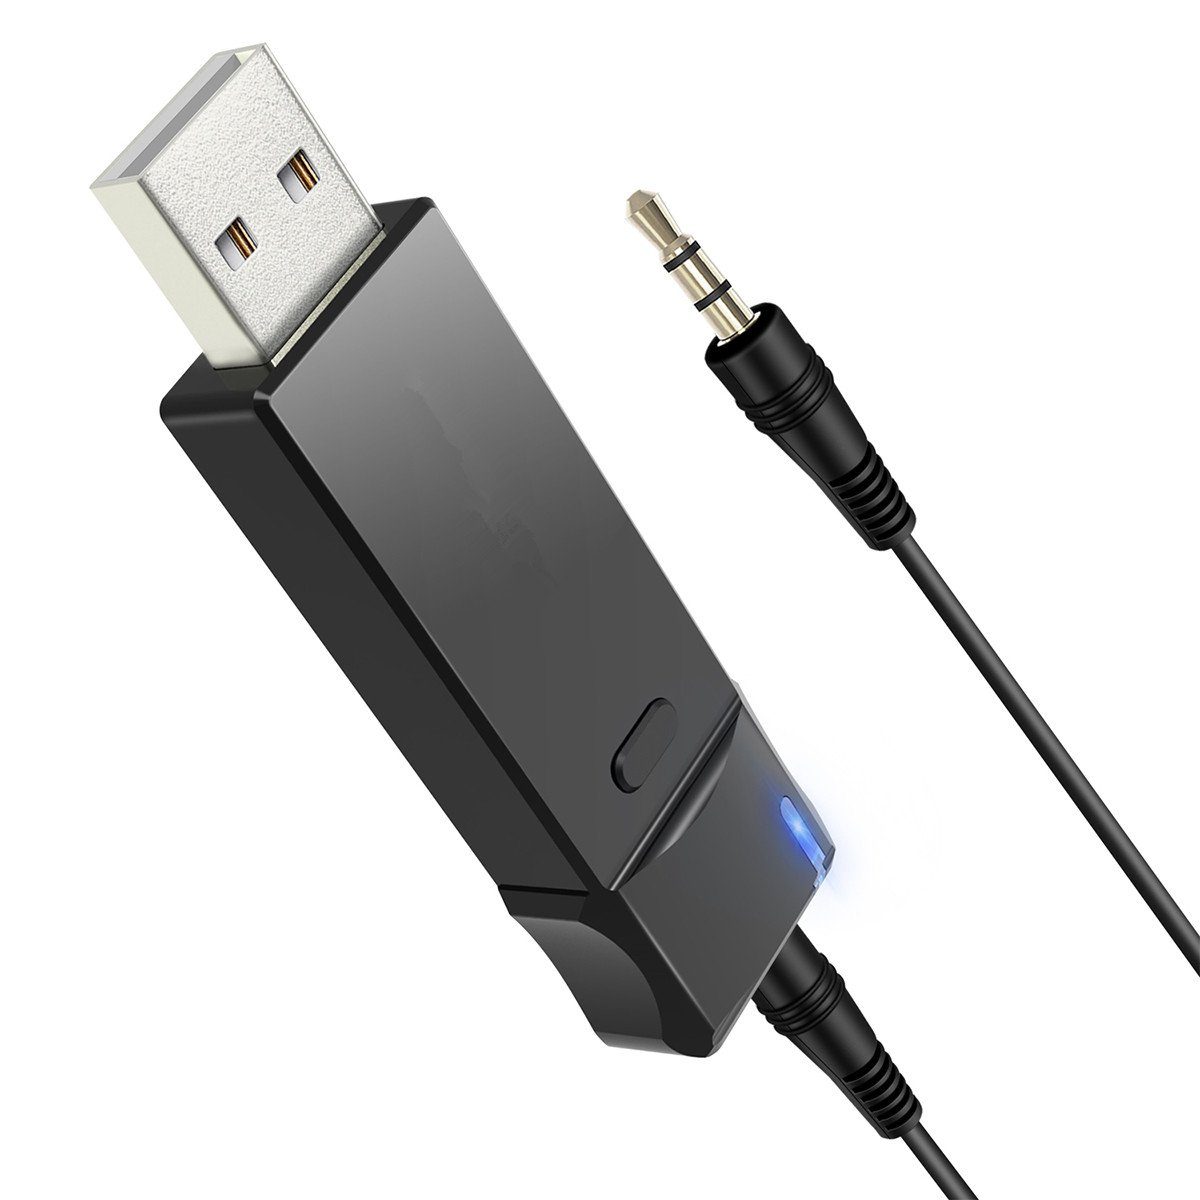 Kaufe Bluetooth 5.0 Empfänger Sender FM Stereo AUX 3,5 mm Klinke